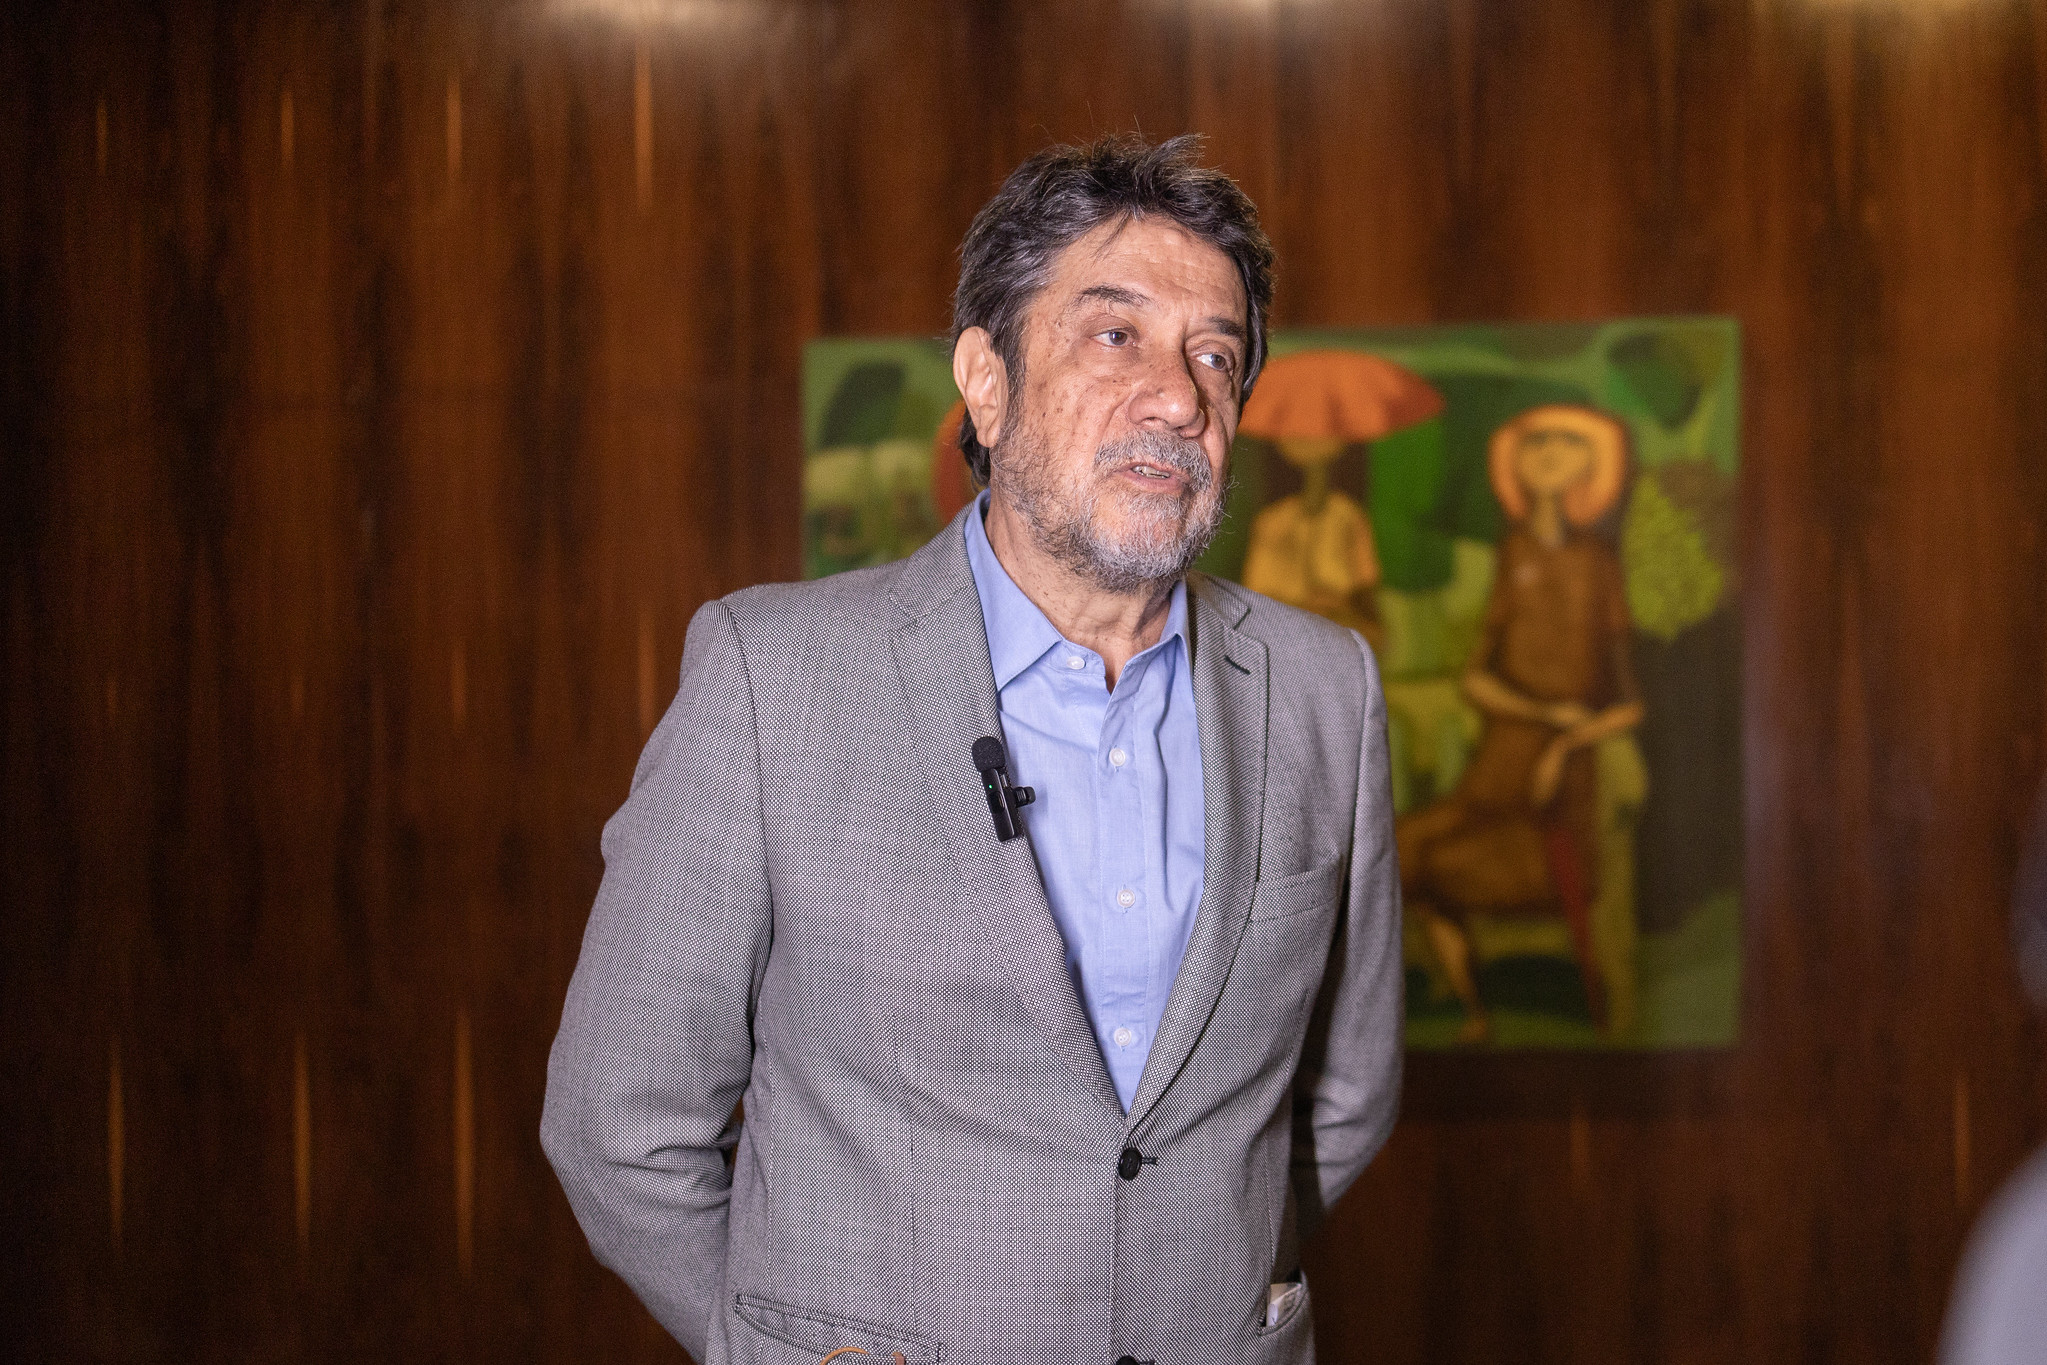 Virgílio Almeida, professor emérito da Universidade Federal de Minas Gerais (UFMG), proferiu palestra magna em evento paralelo do G20 sobre Inteligência Artificial | Foto: Audiovisual G20 Brasil 